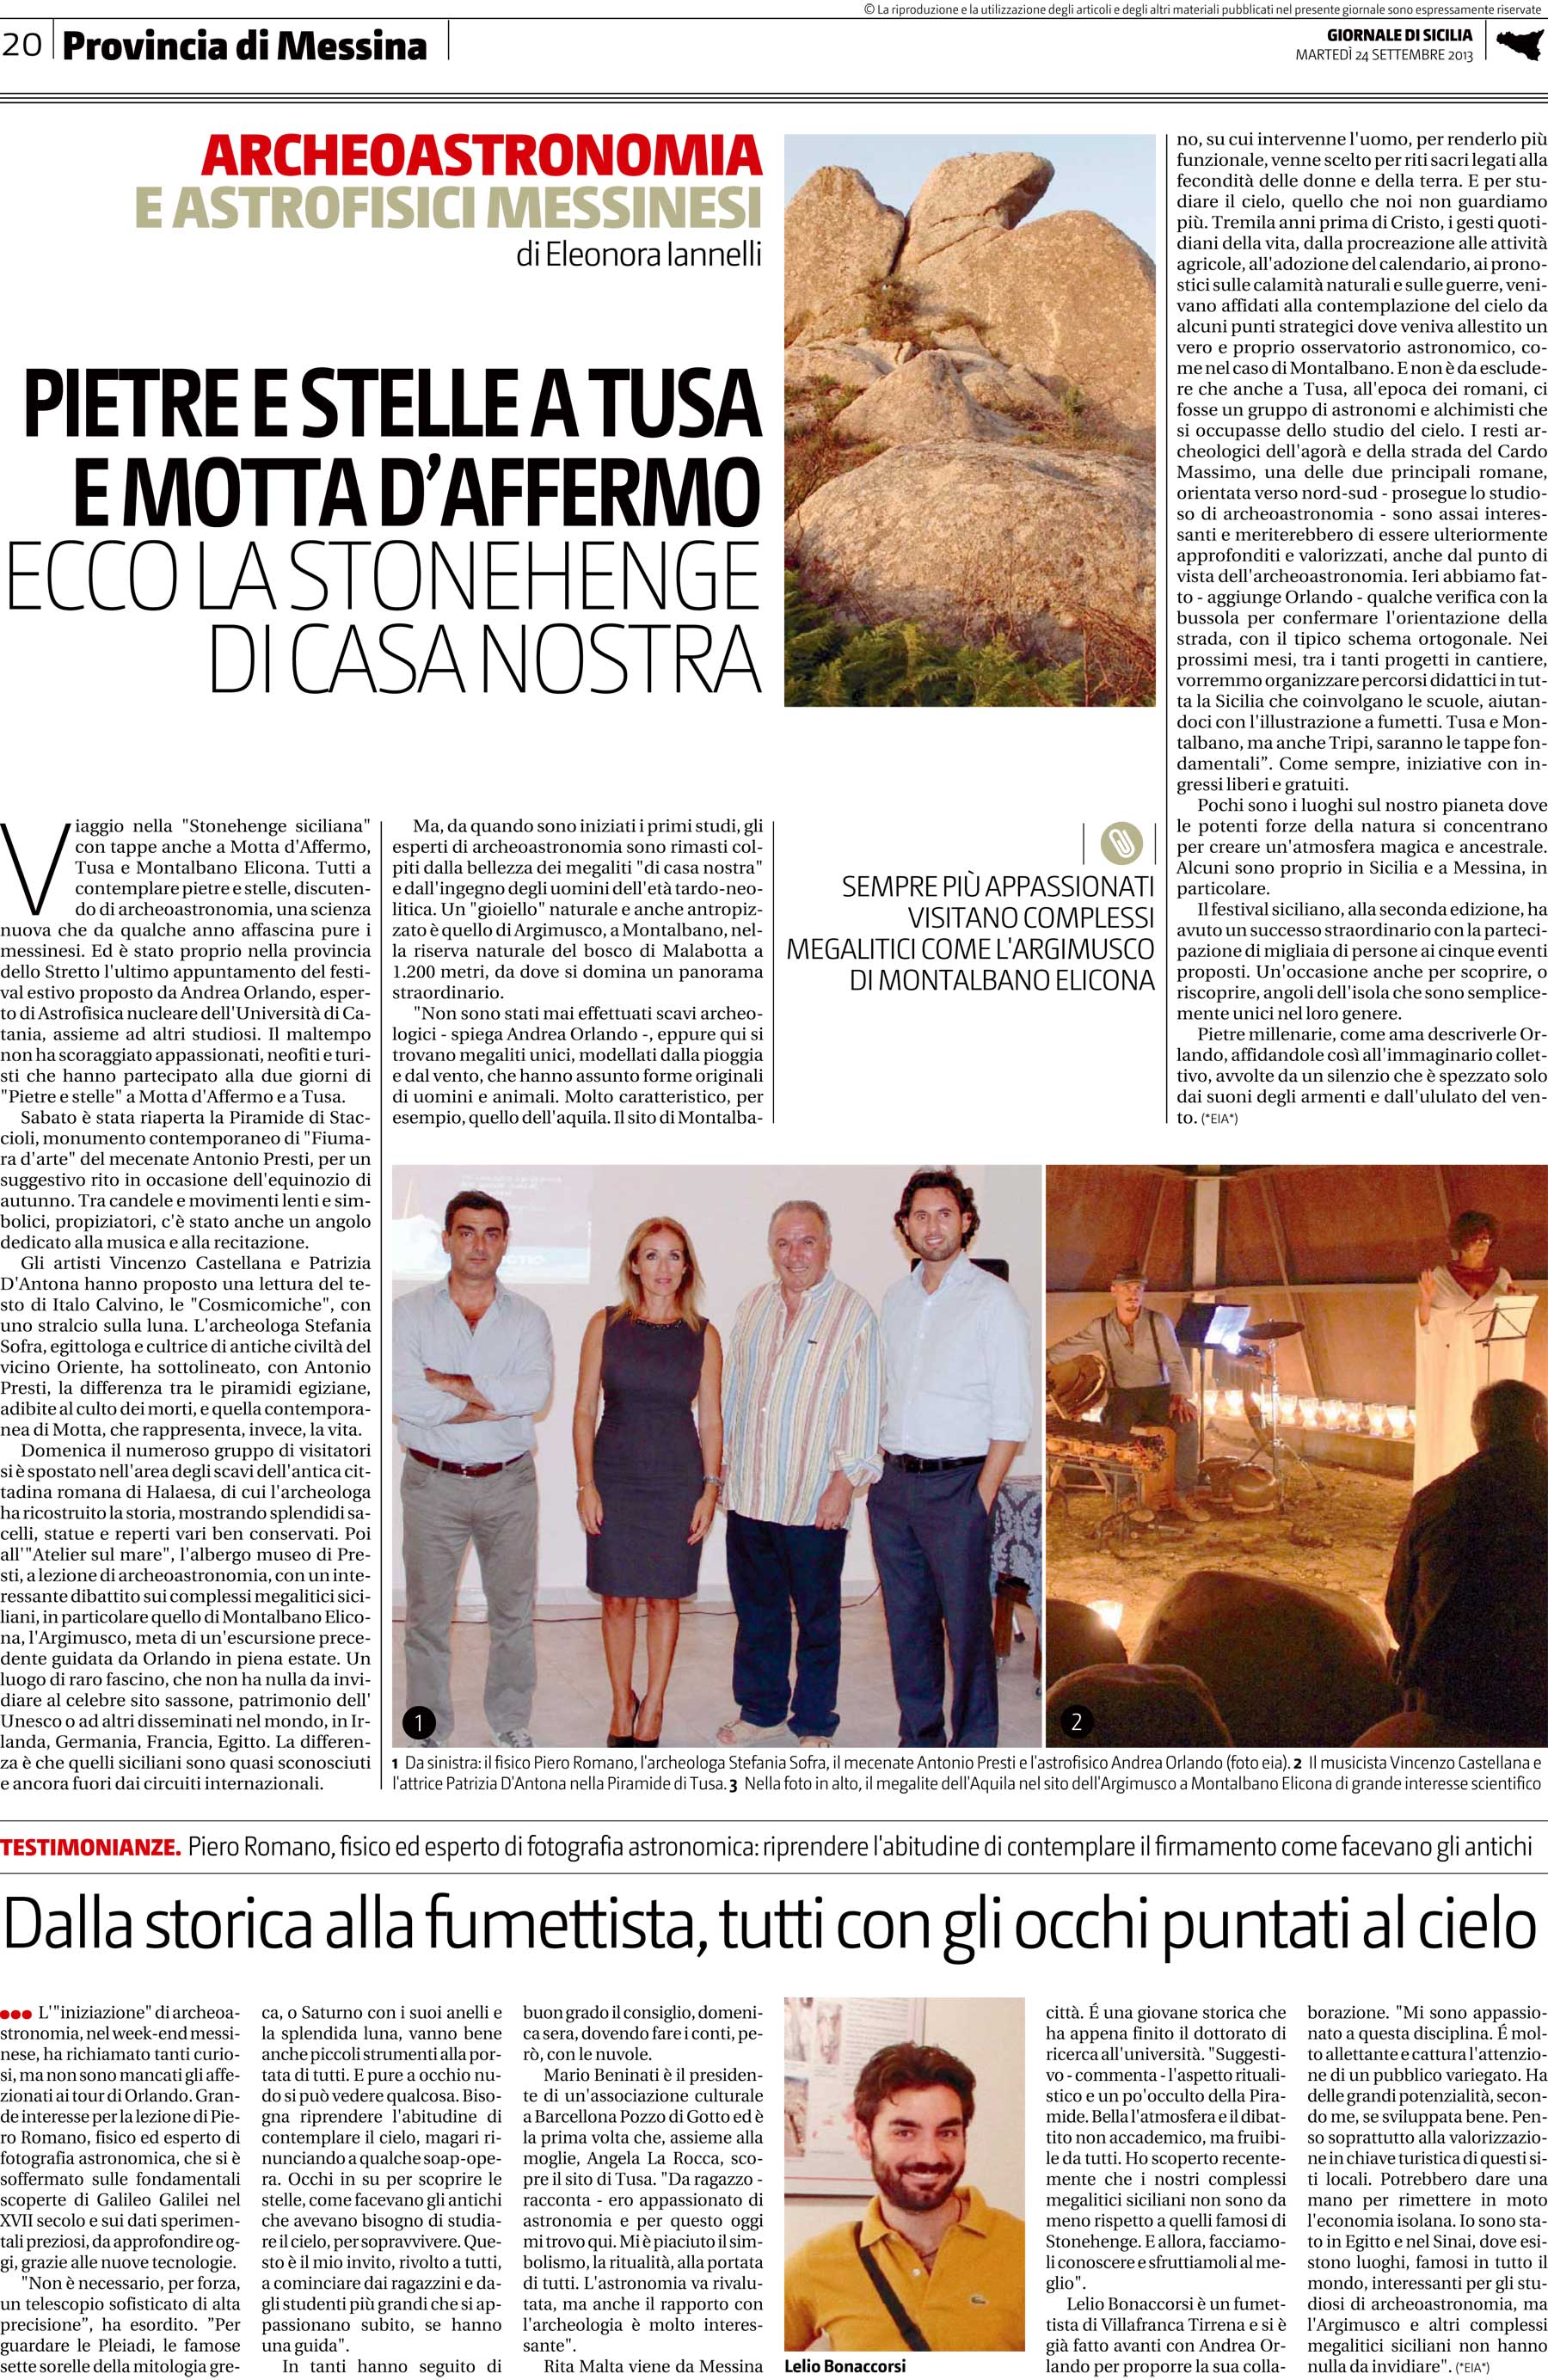 Giornale di Sicilia, 24 settembre 2013